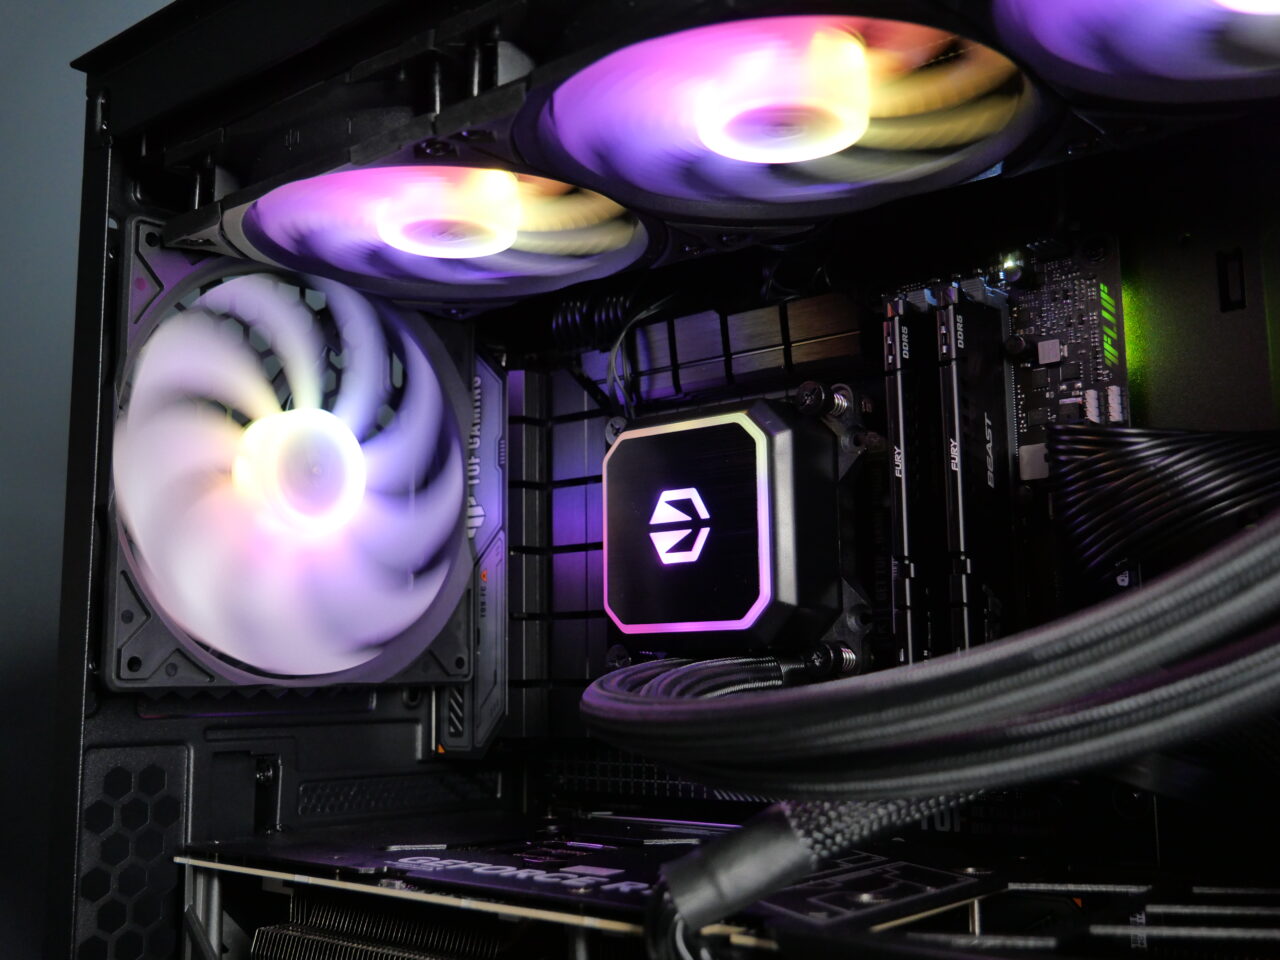 Wnętrze obudowy komputera z widocznymi elementami, takimi jak podświetlana na fioletowo płyta główna, trzy wentylatory z efektami RGB.